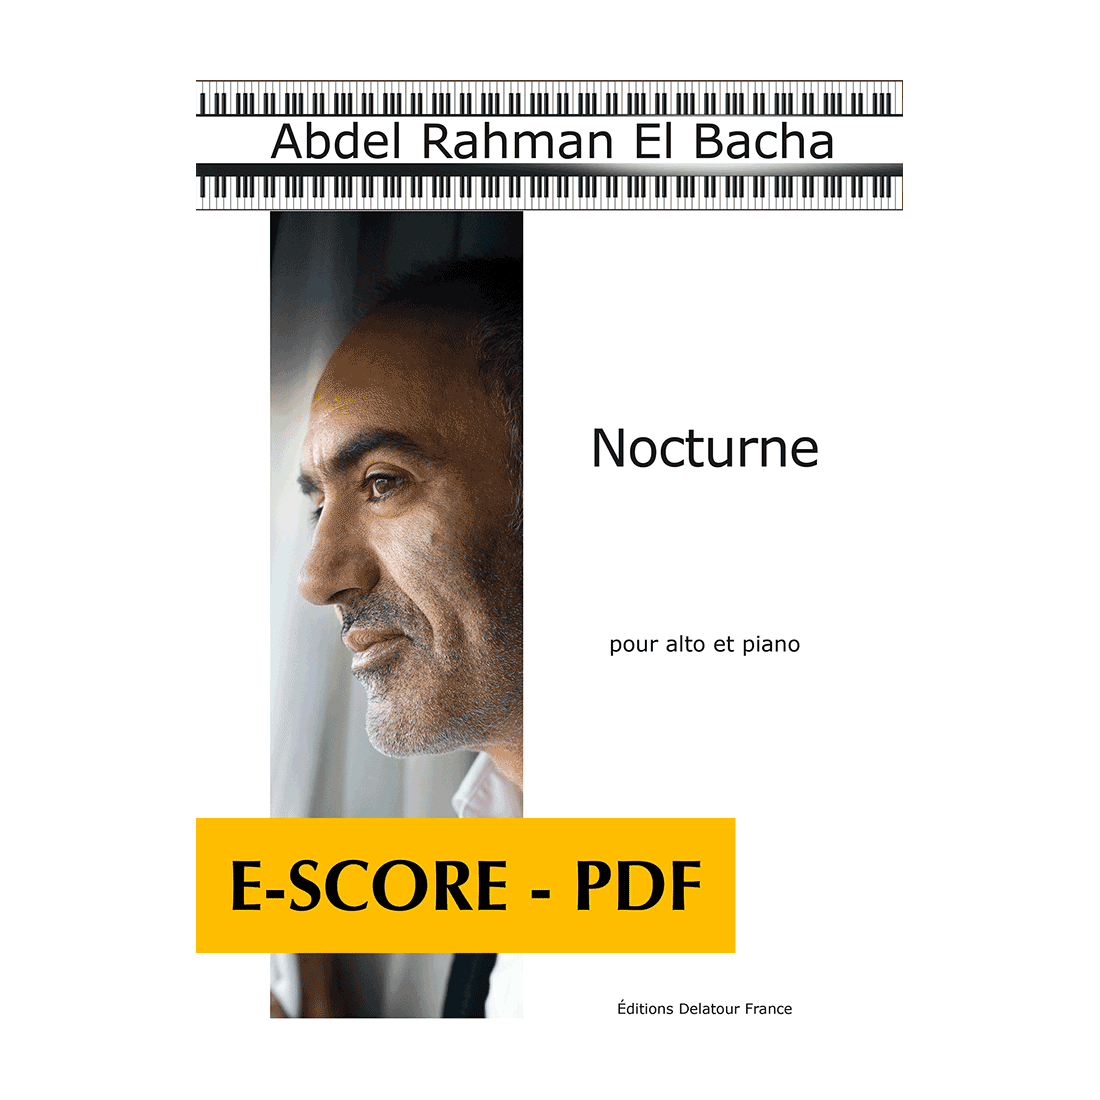 Nocturne pour alto et piano - E-score PDF